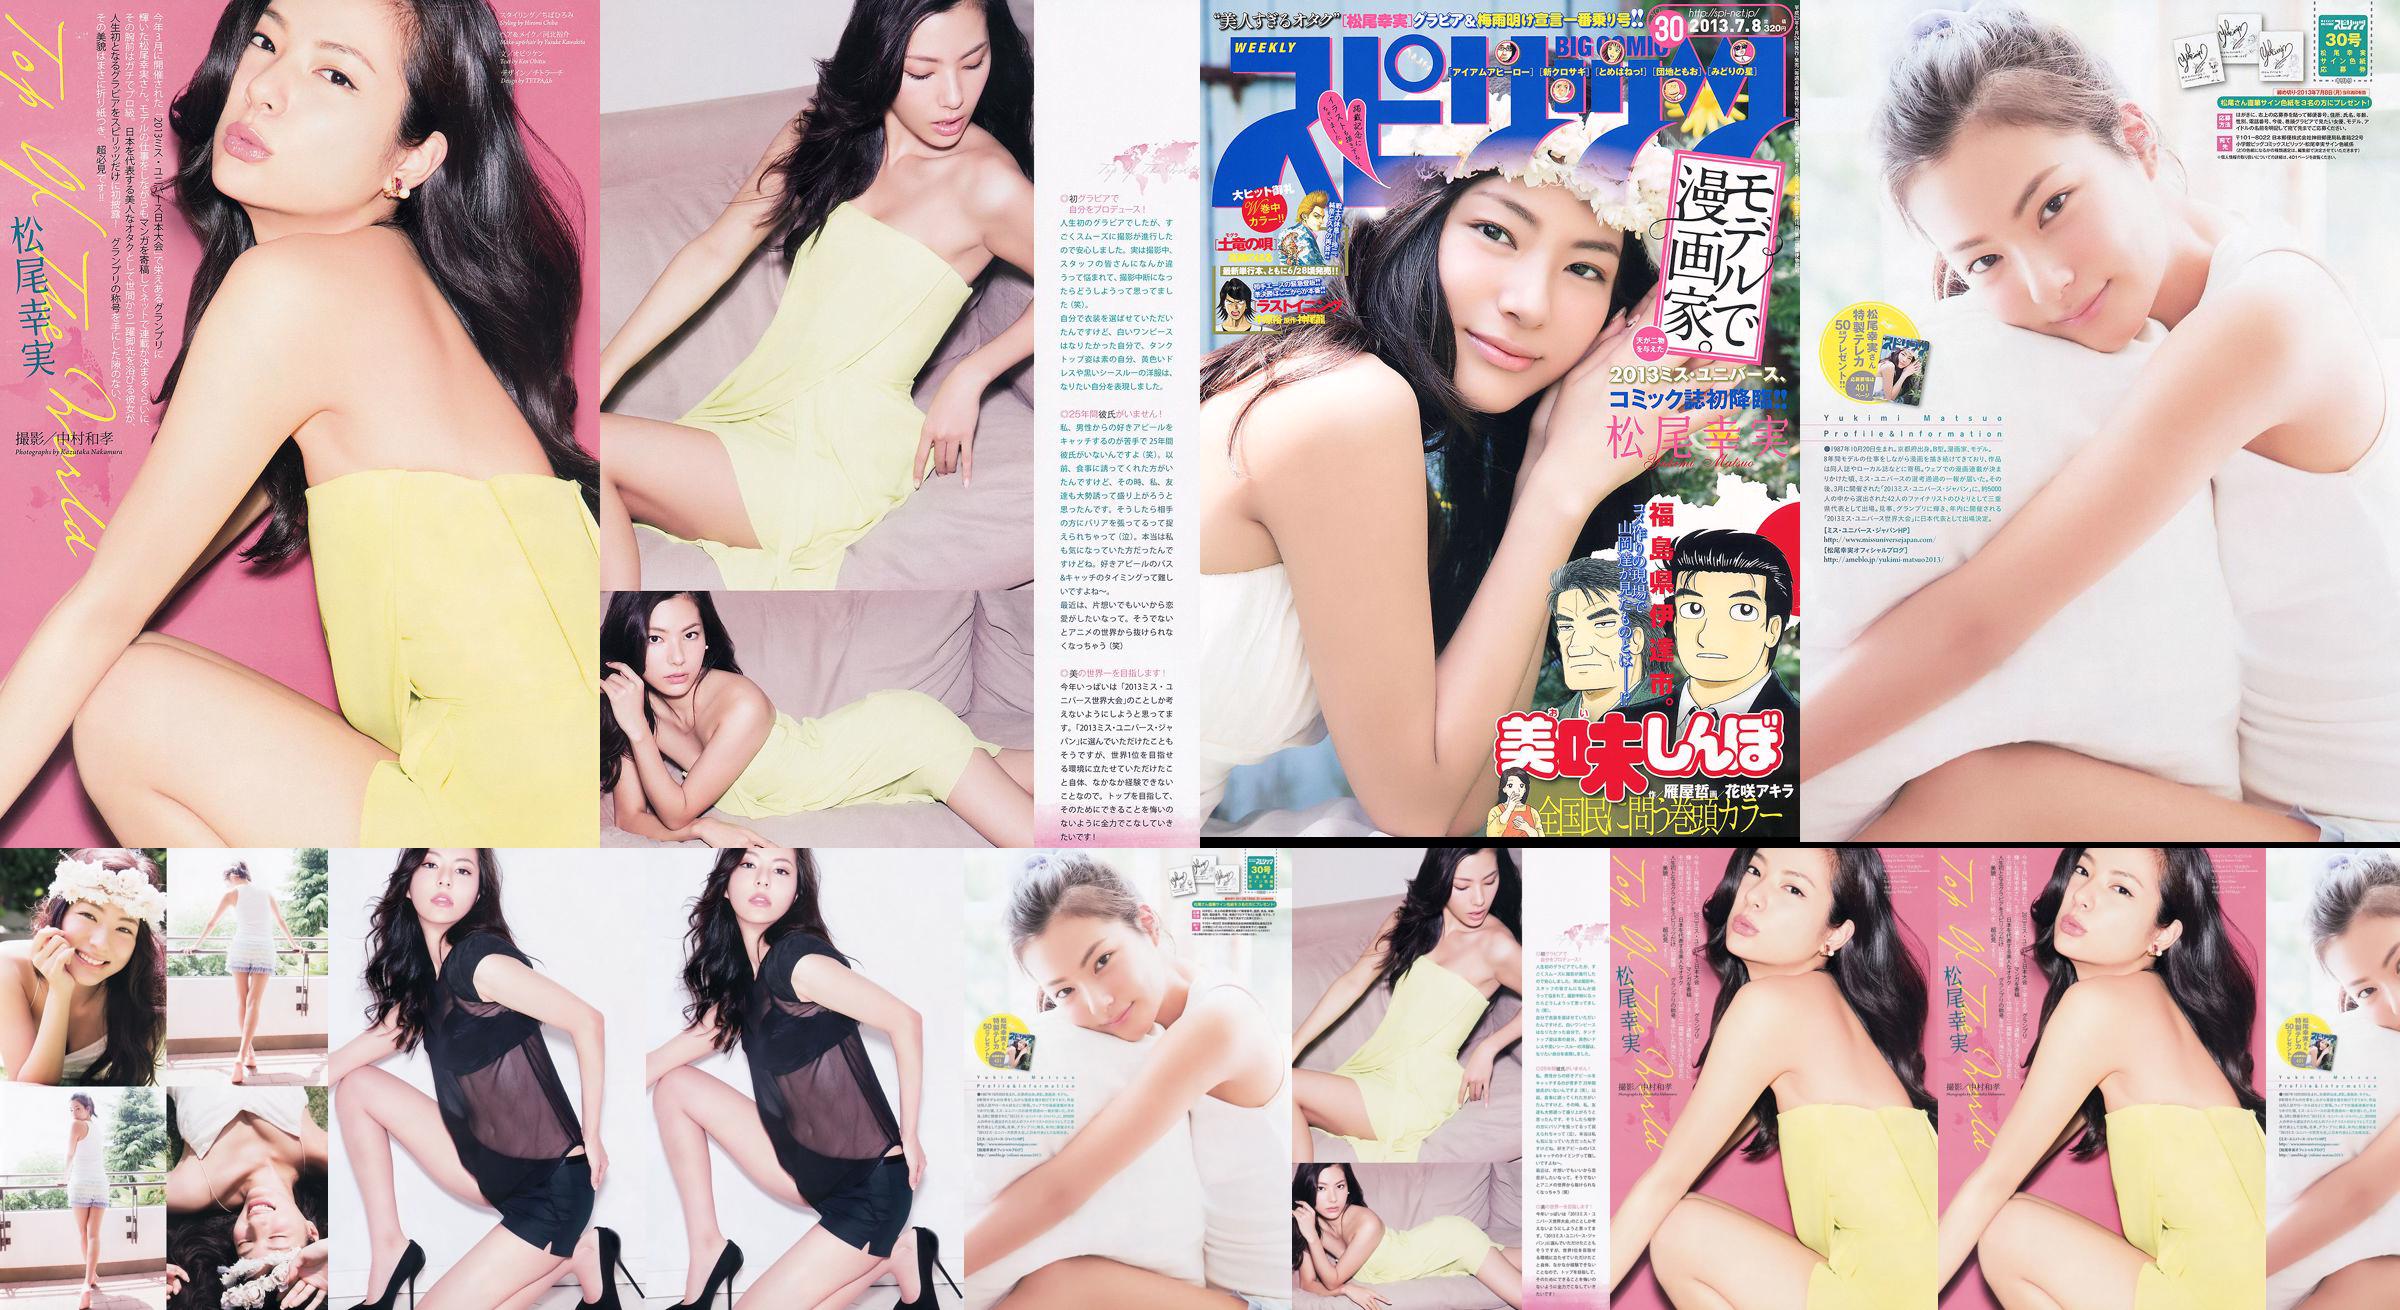 [Weekly Big Comic Spirits] Komi Matsuo 2013 No.30 Photo Magazine No.e16df0 Pagina 1